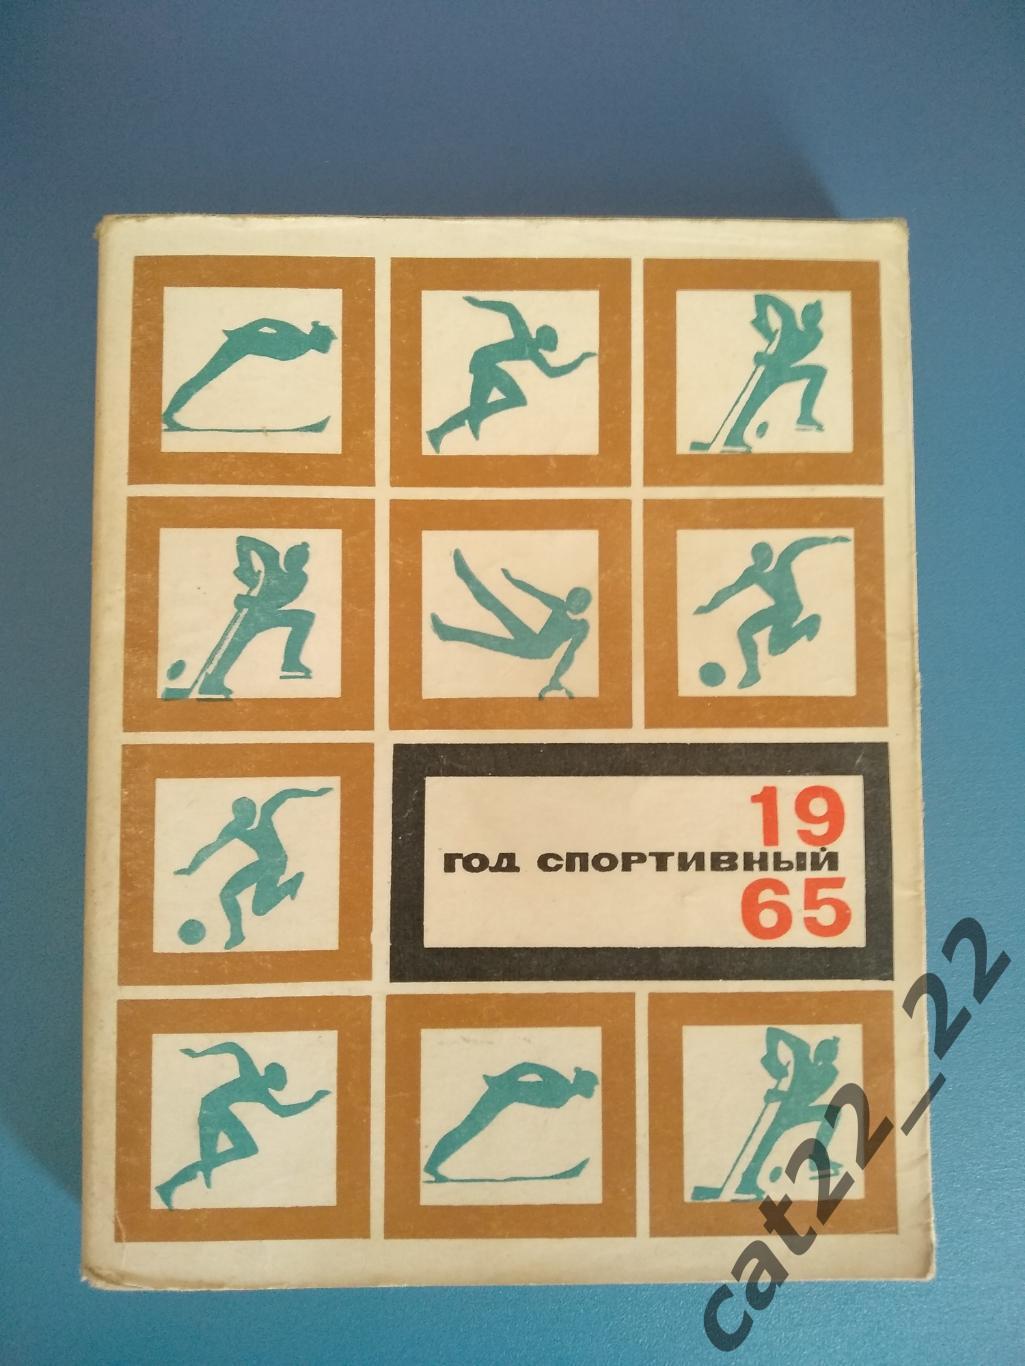 Книга/издание. Год спортивный 1965. Москва СССР/Россия 1966